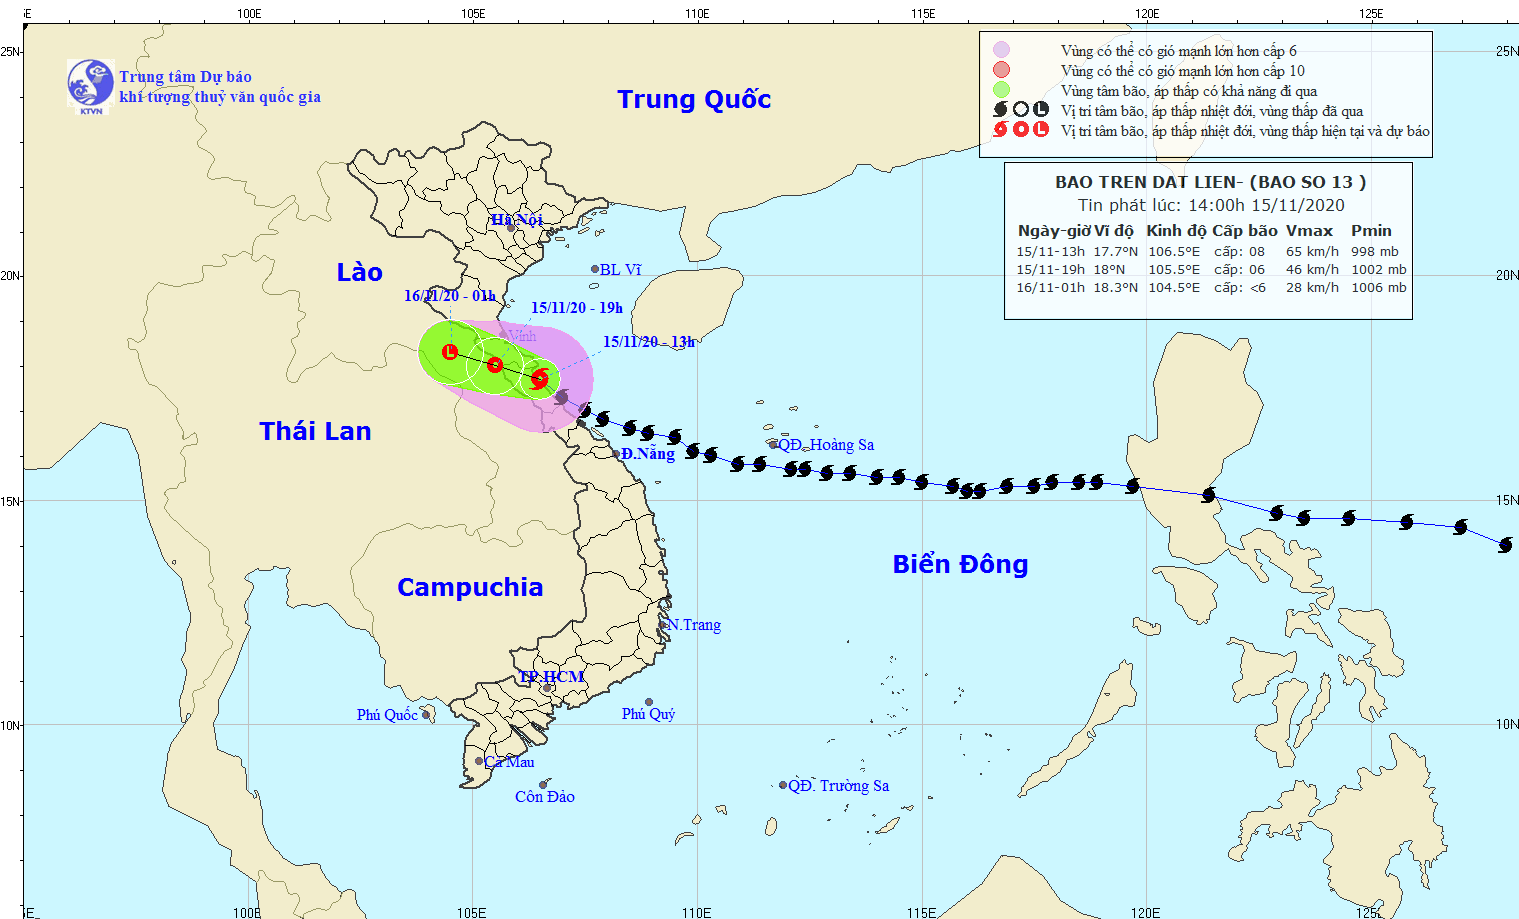 Sau khi đi vào Quảng Nam, Hà Tĩnh, bão số 13 sẽ suy yếu thành áp thấp nhiệt đới. - Ảnh: Trung tâm Dự báo Khí tượng thủy văn Quốc gia.